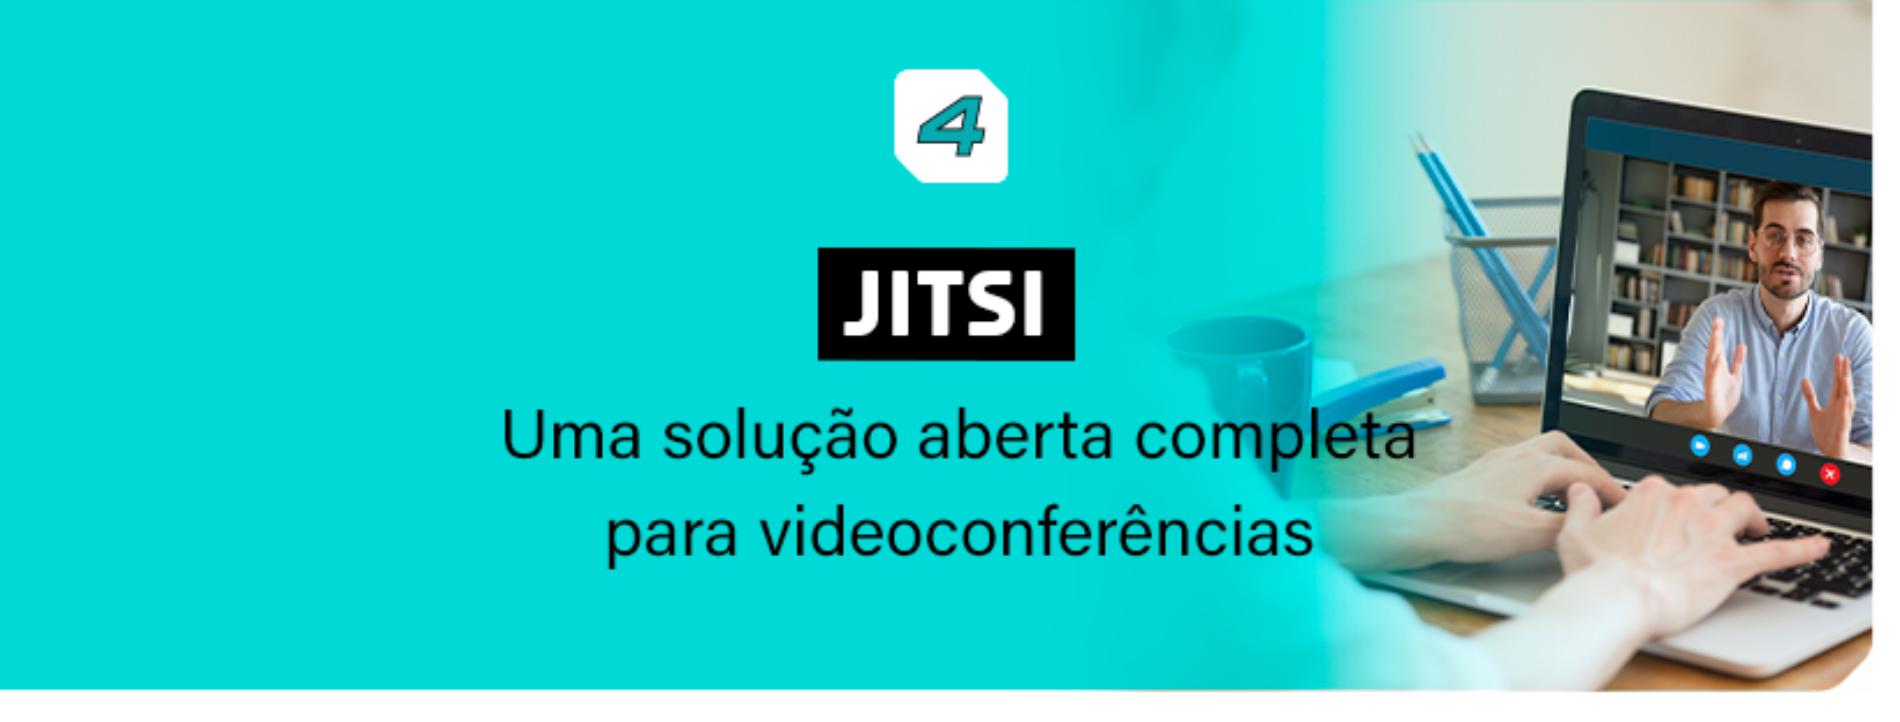 Jitsi: Solução aberta completa para videoconferências.